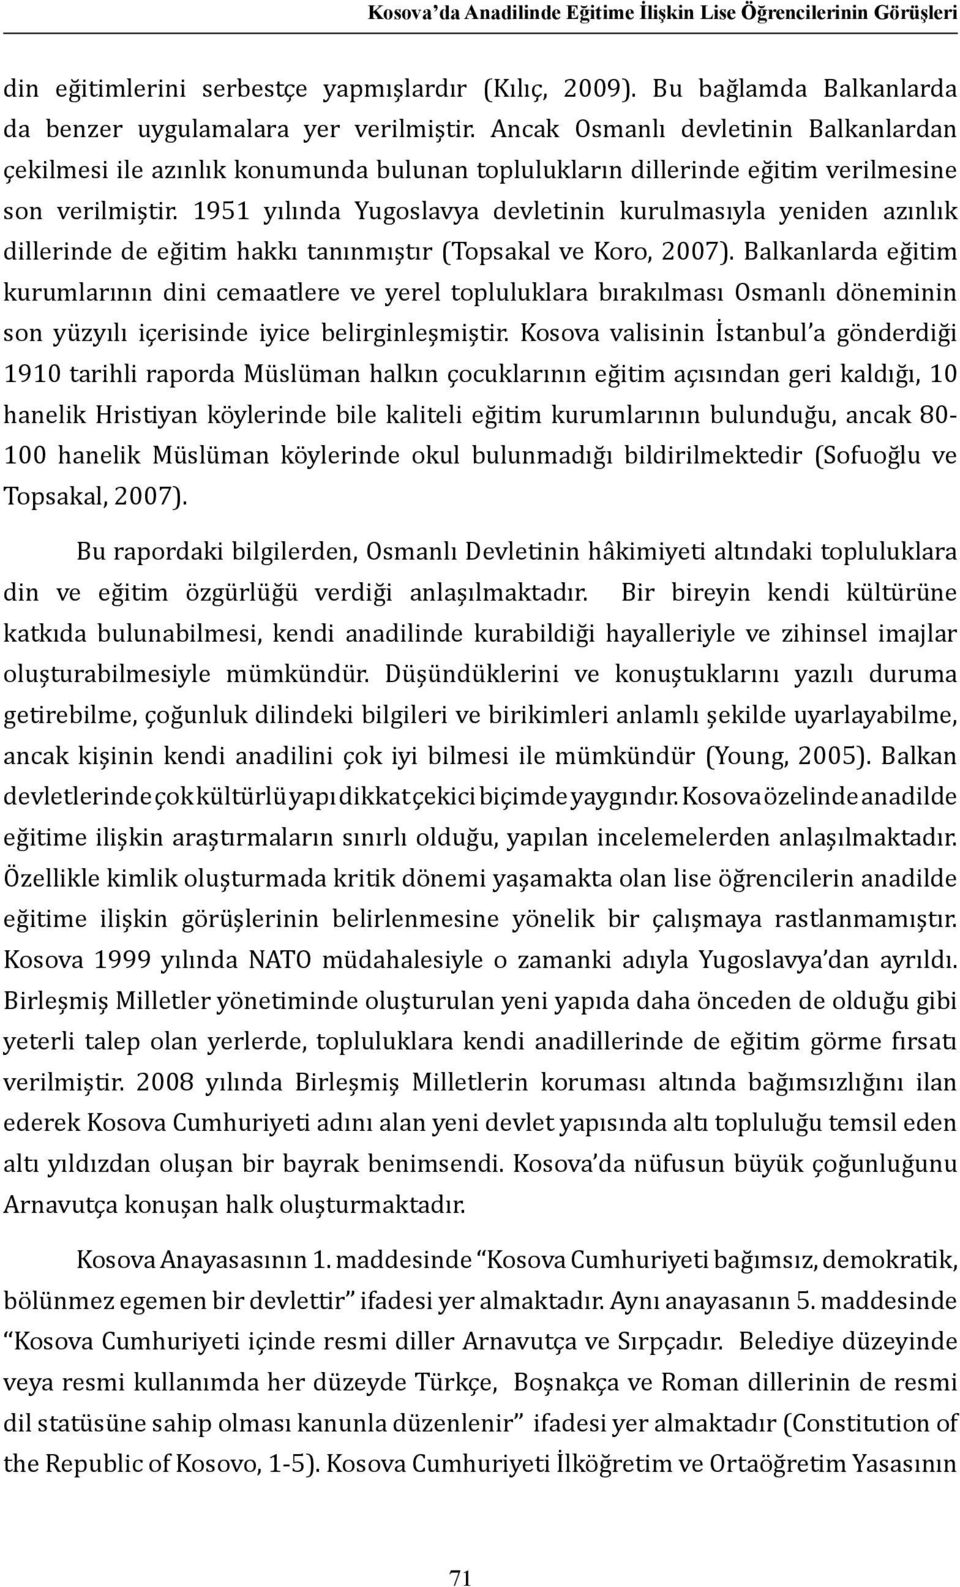 1951 yılında Yugoslavya devletinin kurulmasıyla yeniden azınlık dillerinde de eğitim hakkı tanınmıştır (Topsakal ve Koro, 2007).